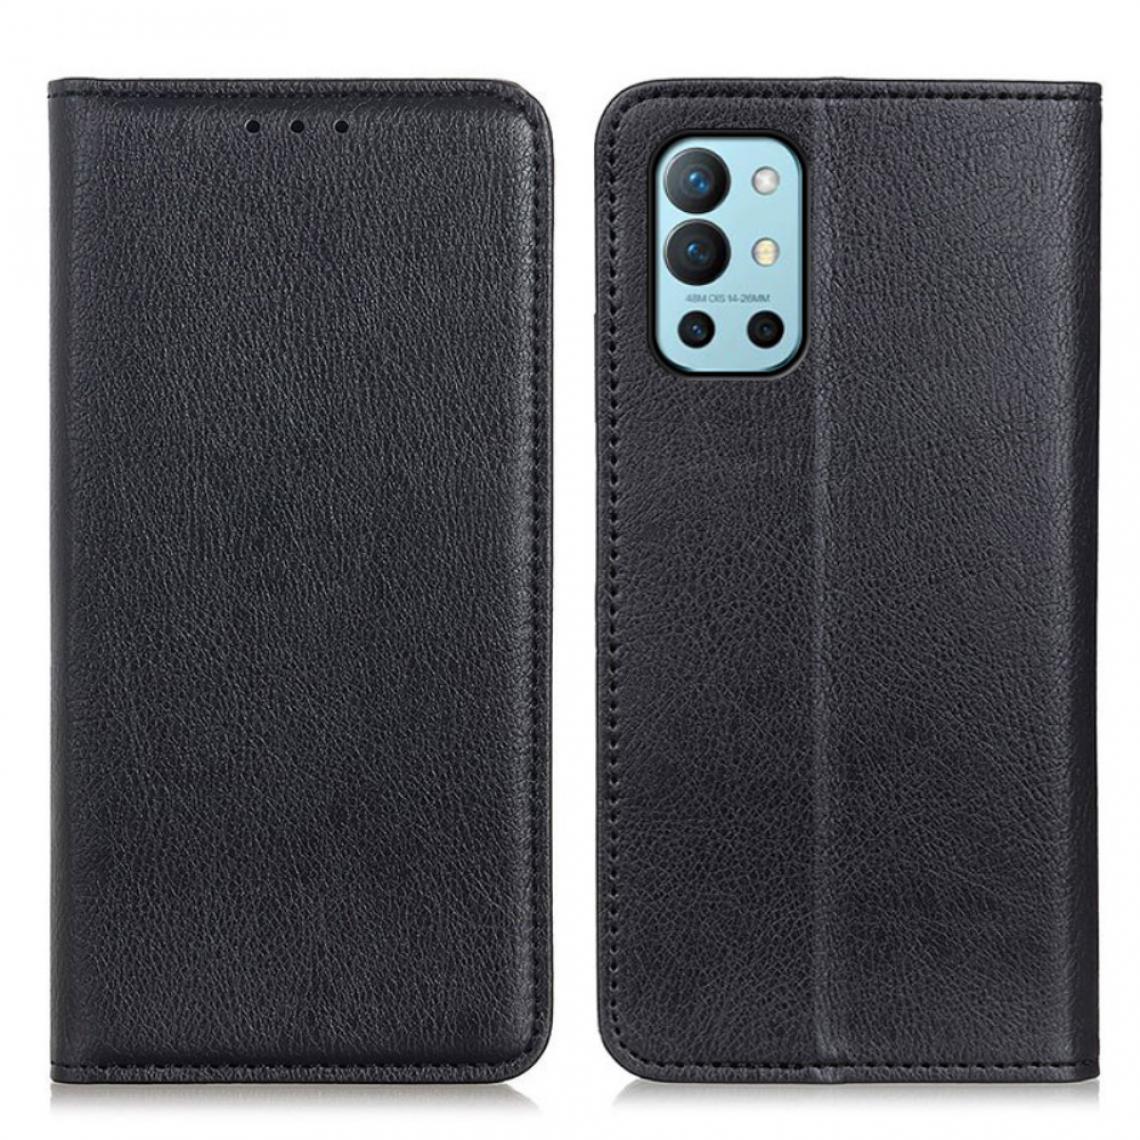 Other - Etui en PU Texture Litchi auto-absorbée avec support noir pour OnePlus 9R - Coque, étui smartphone